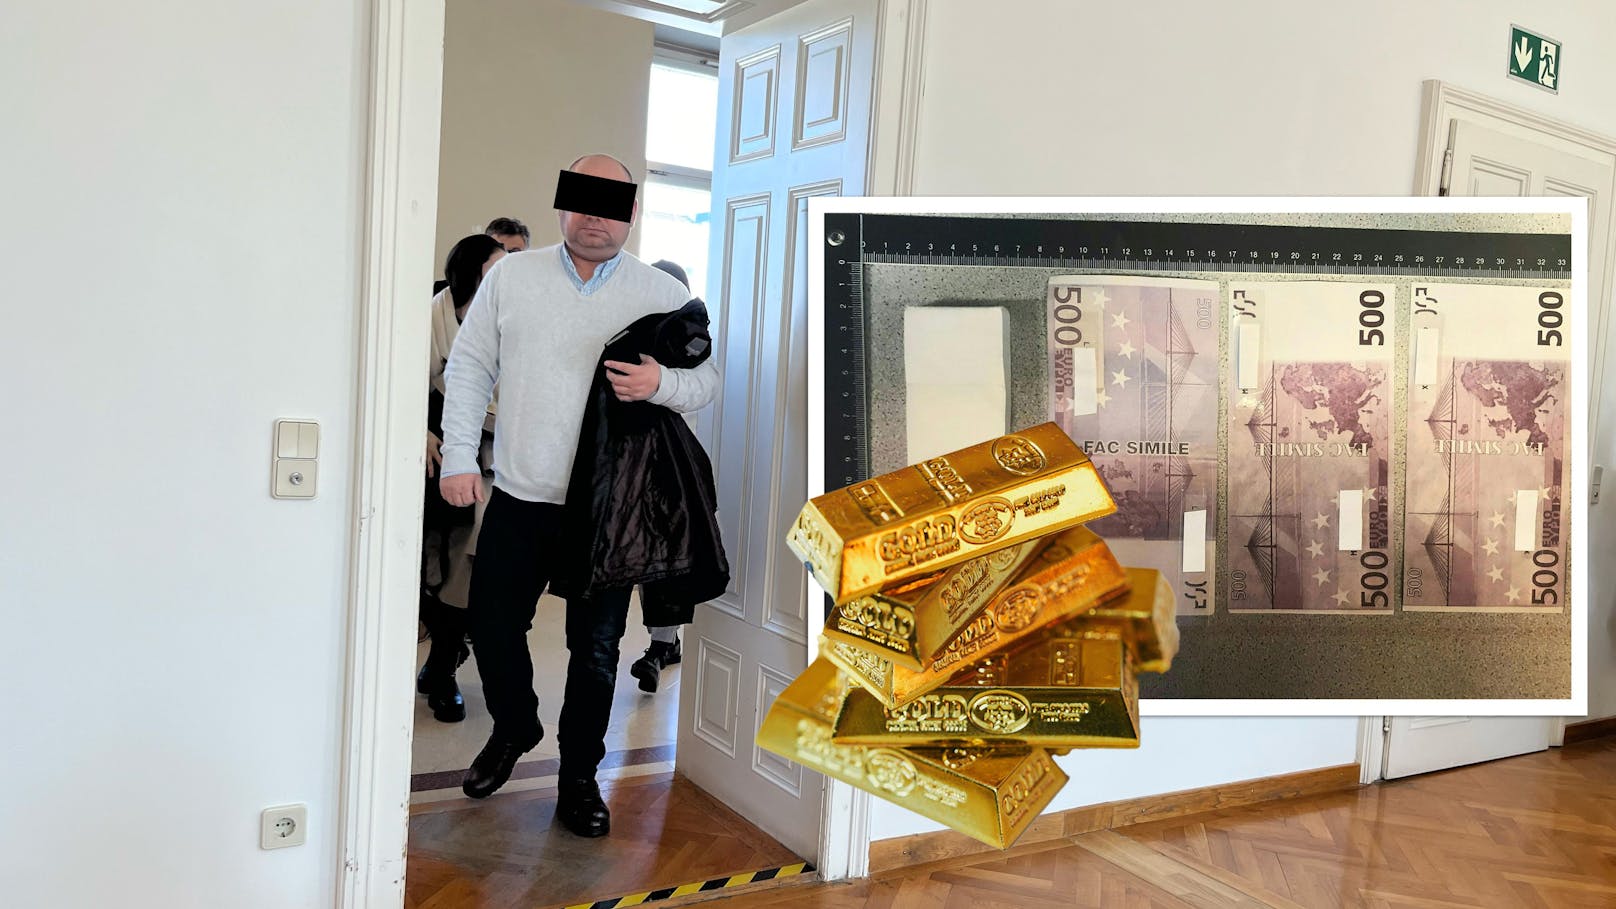 Goldbarren-Falle! Bande erbeutet 109.500 Euro in bar